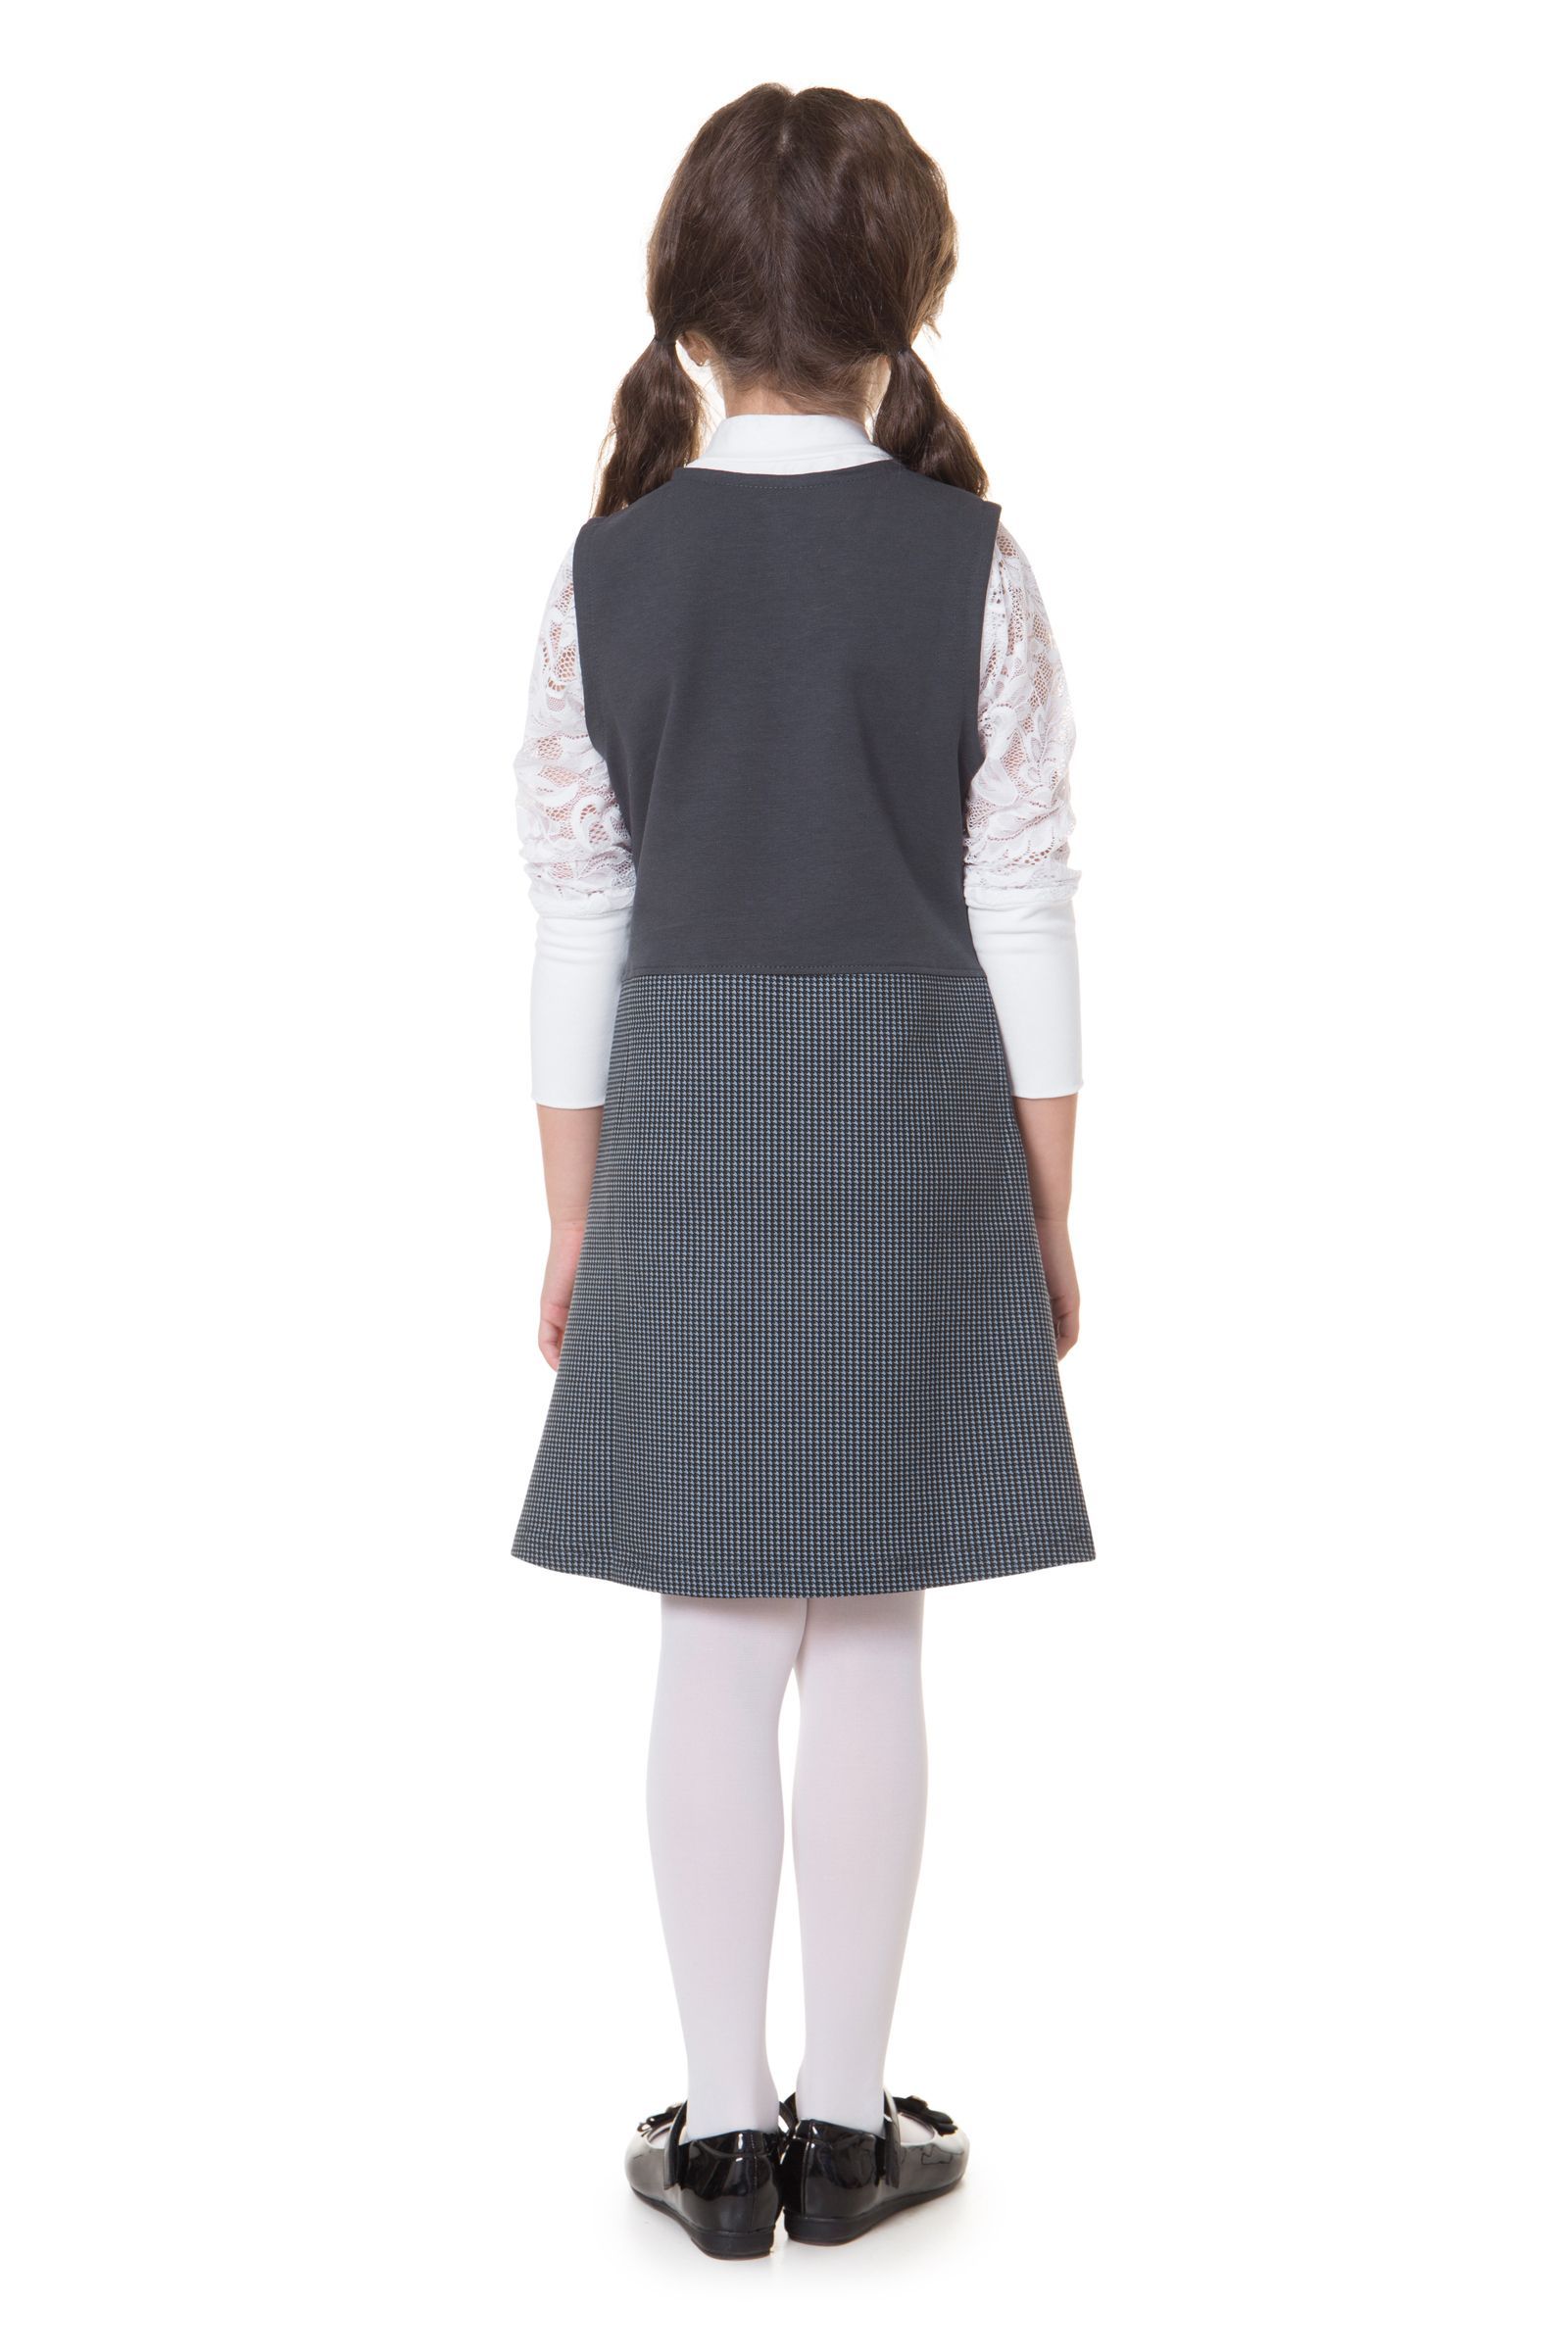 Сарафан-СФ15-3162 оптом от производителя детской одежды 'Алёна'